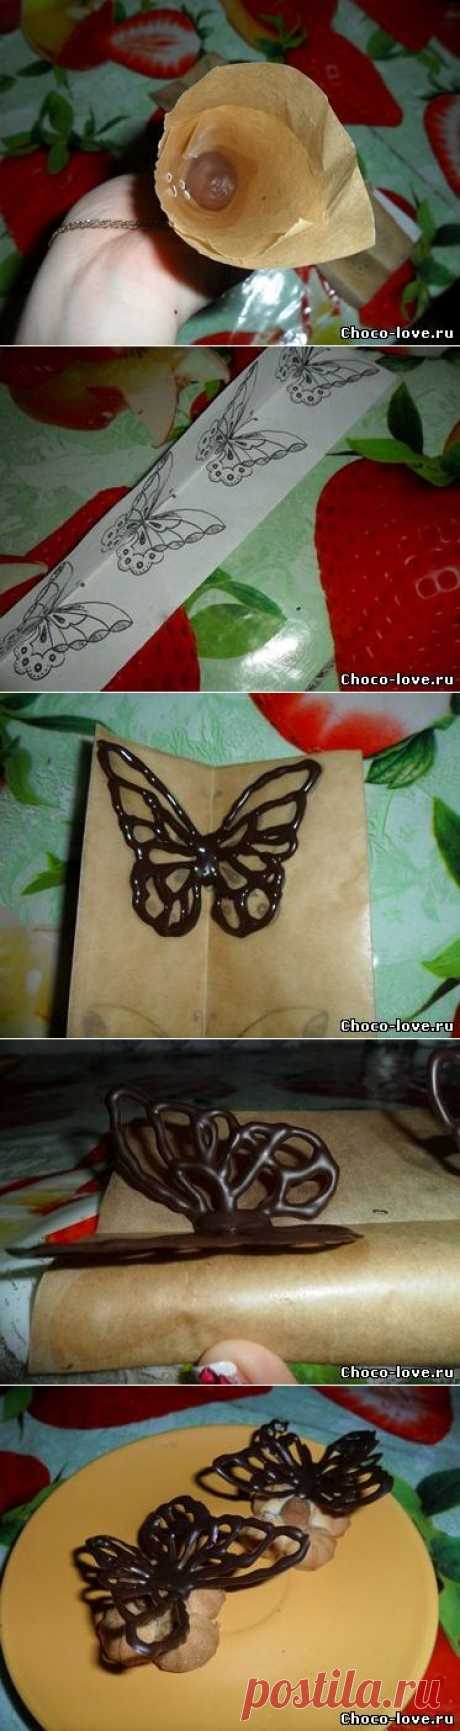 Как сделать бабочку из шоколада - Шоколадный сайт